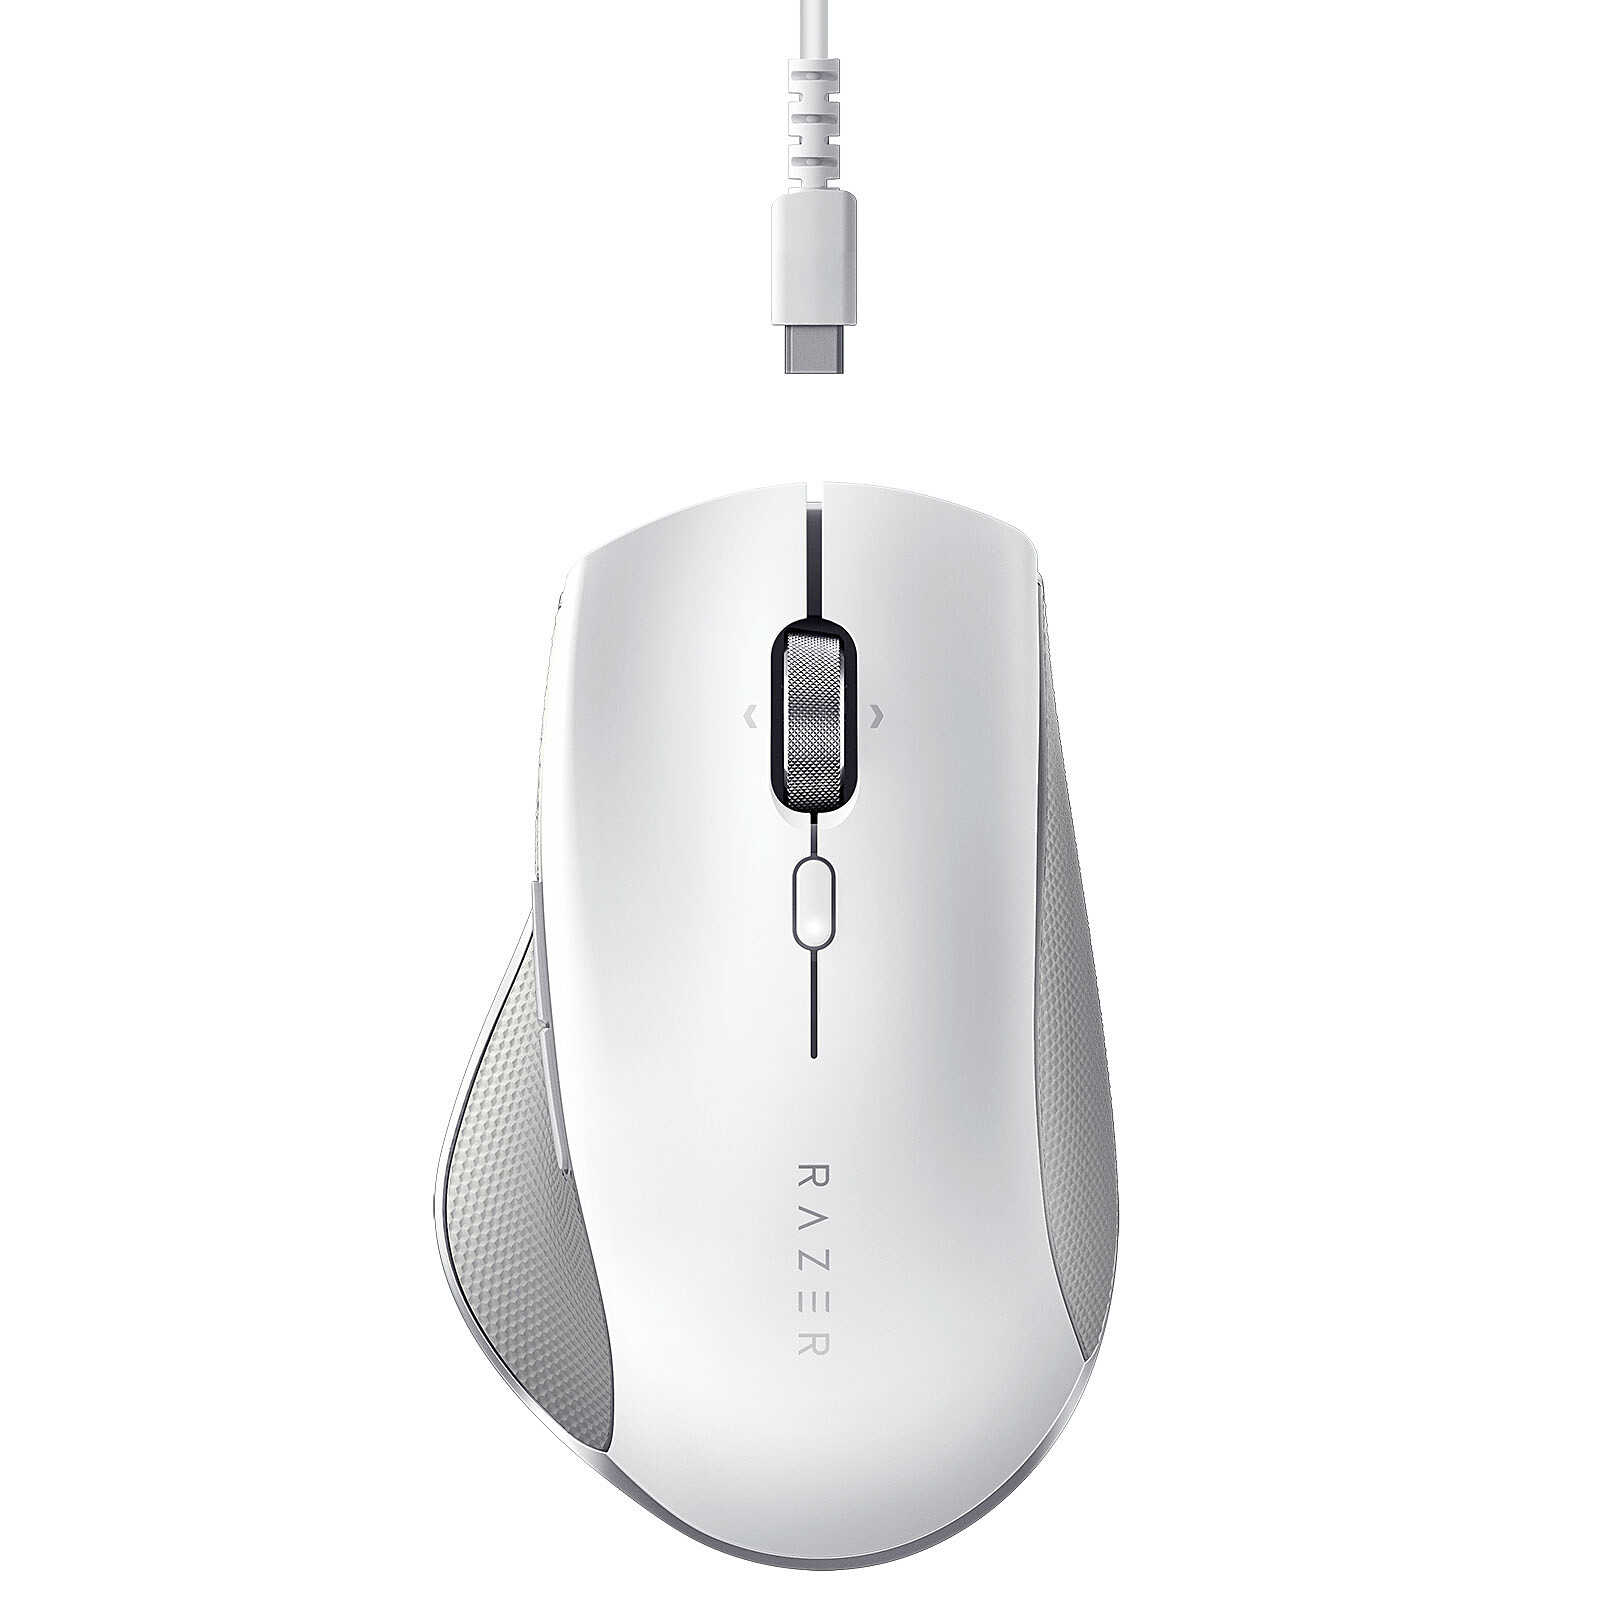 Logitech G G305 Lightspeed Wireless Gaming Mouse (Noir) - Souris PC -  Garantie 3 ans LDLC